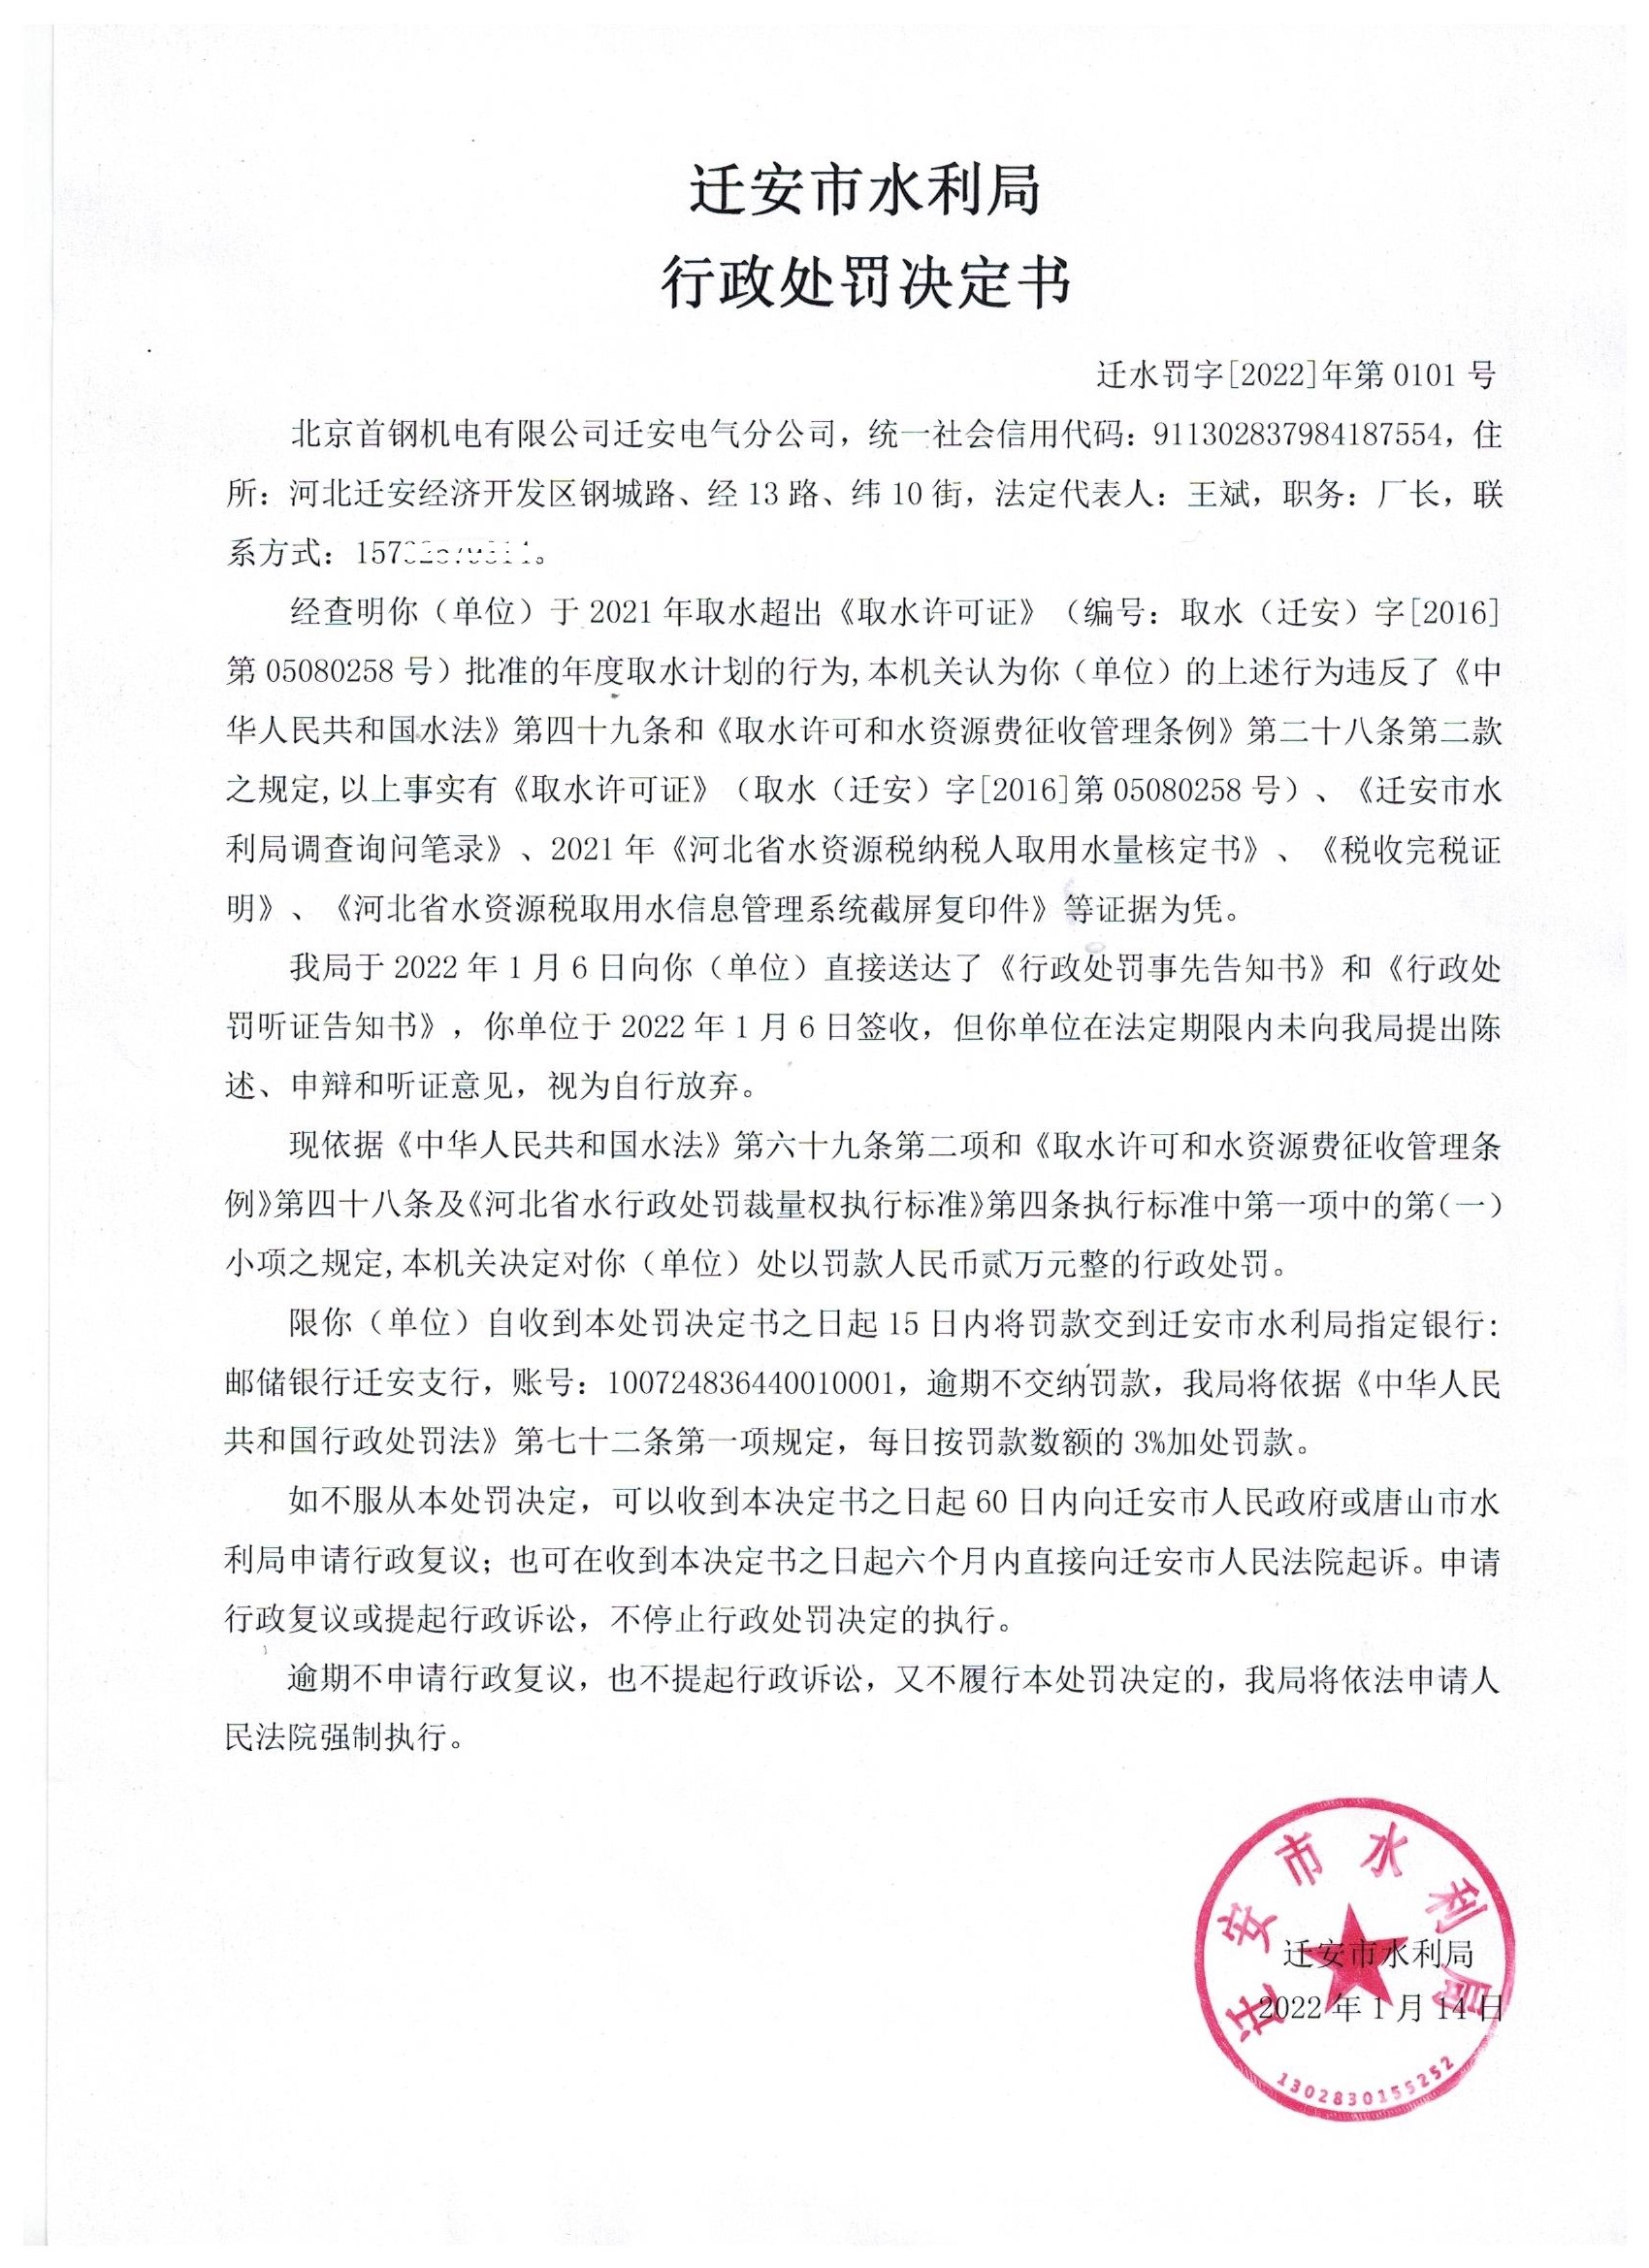 北京首钢机电有限公司迁安电气分公司超计划取水行政处罚一案行政处罚决定书88.jpg